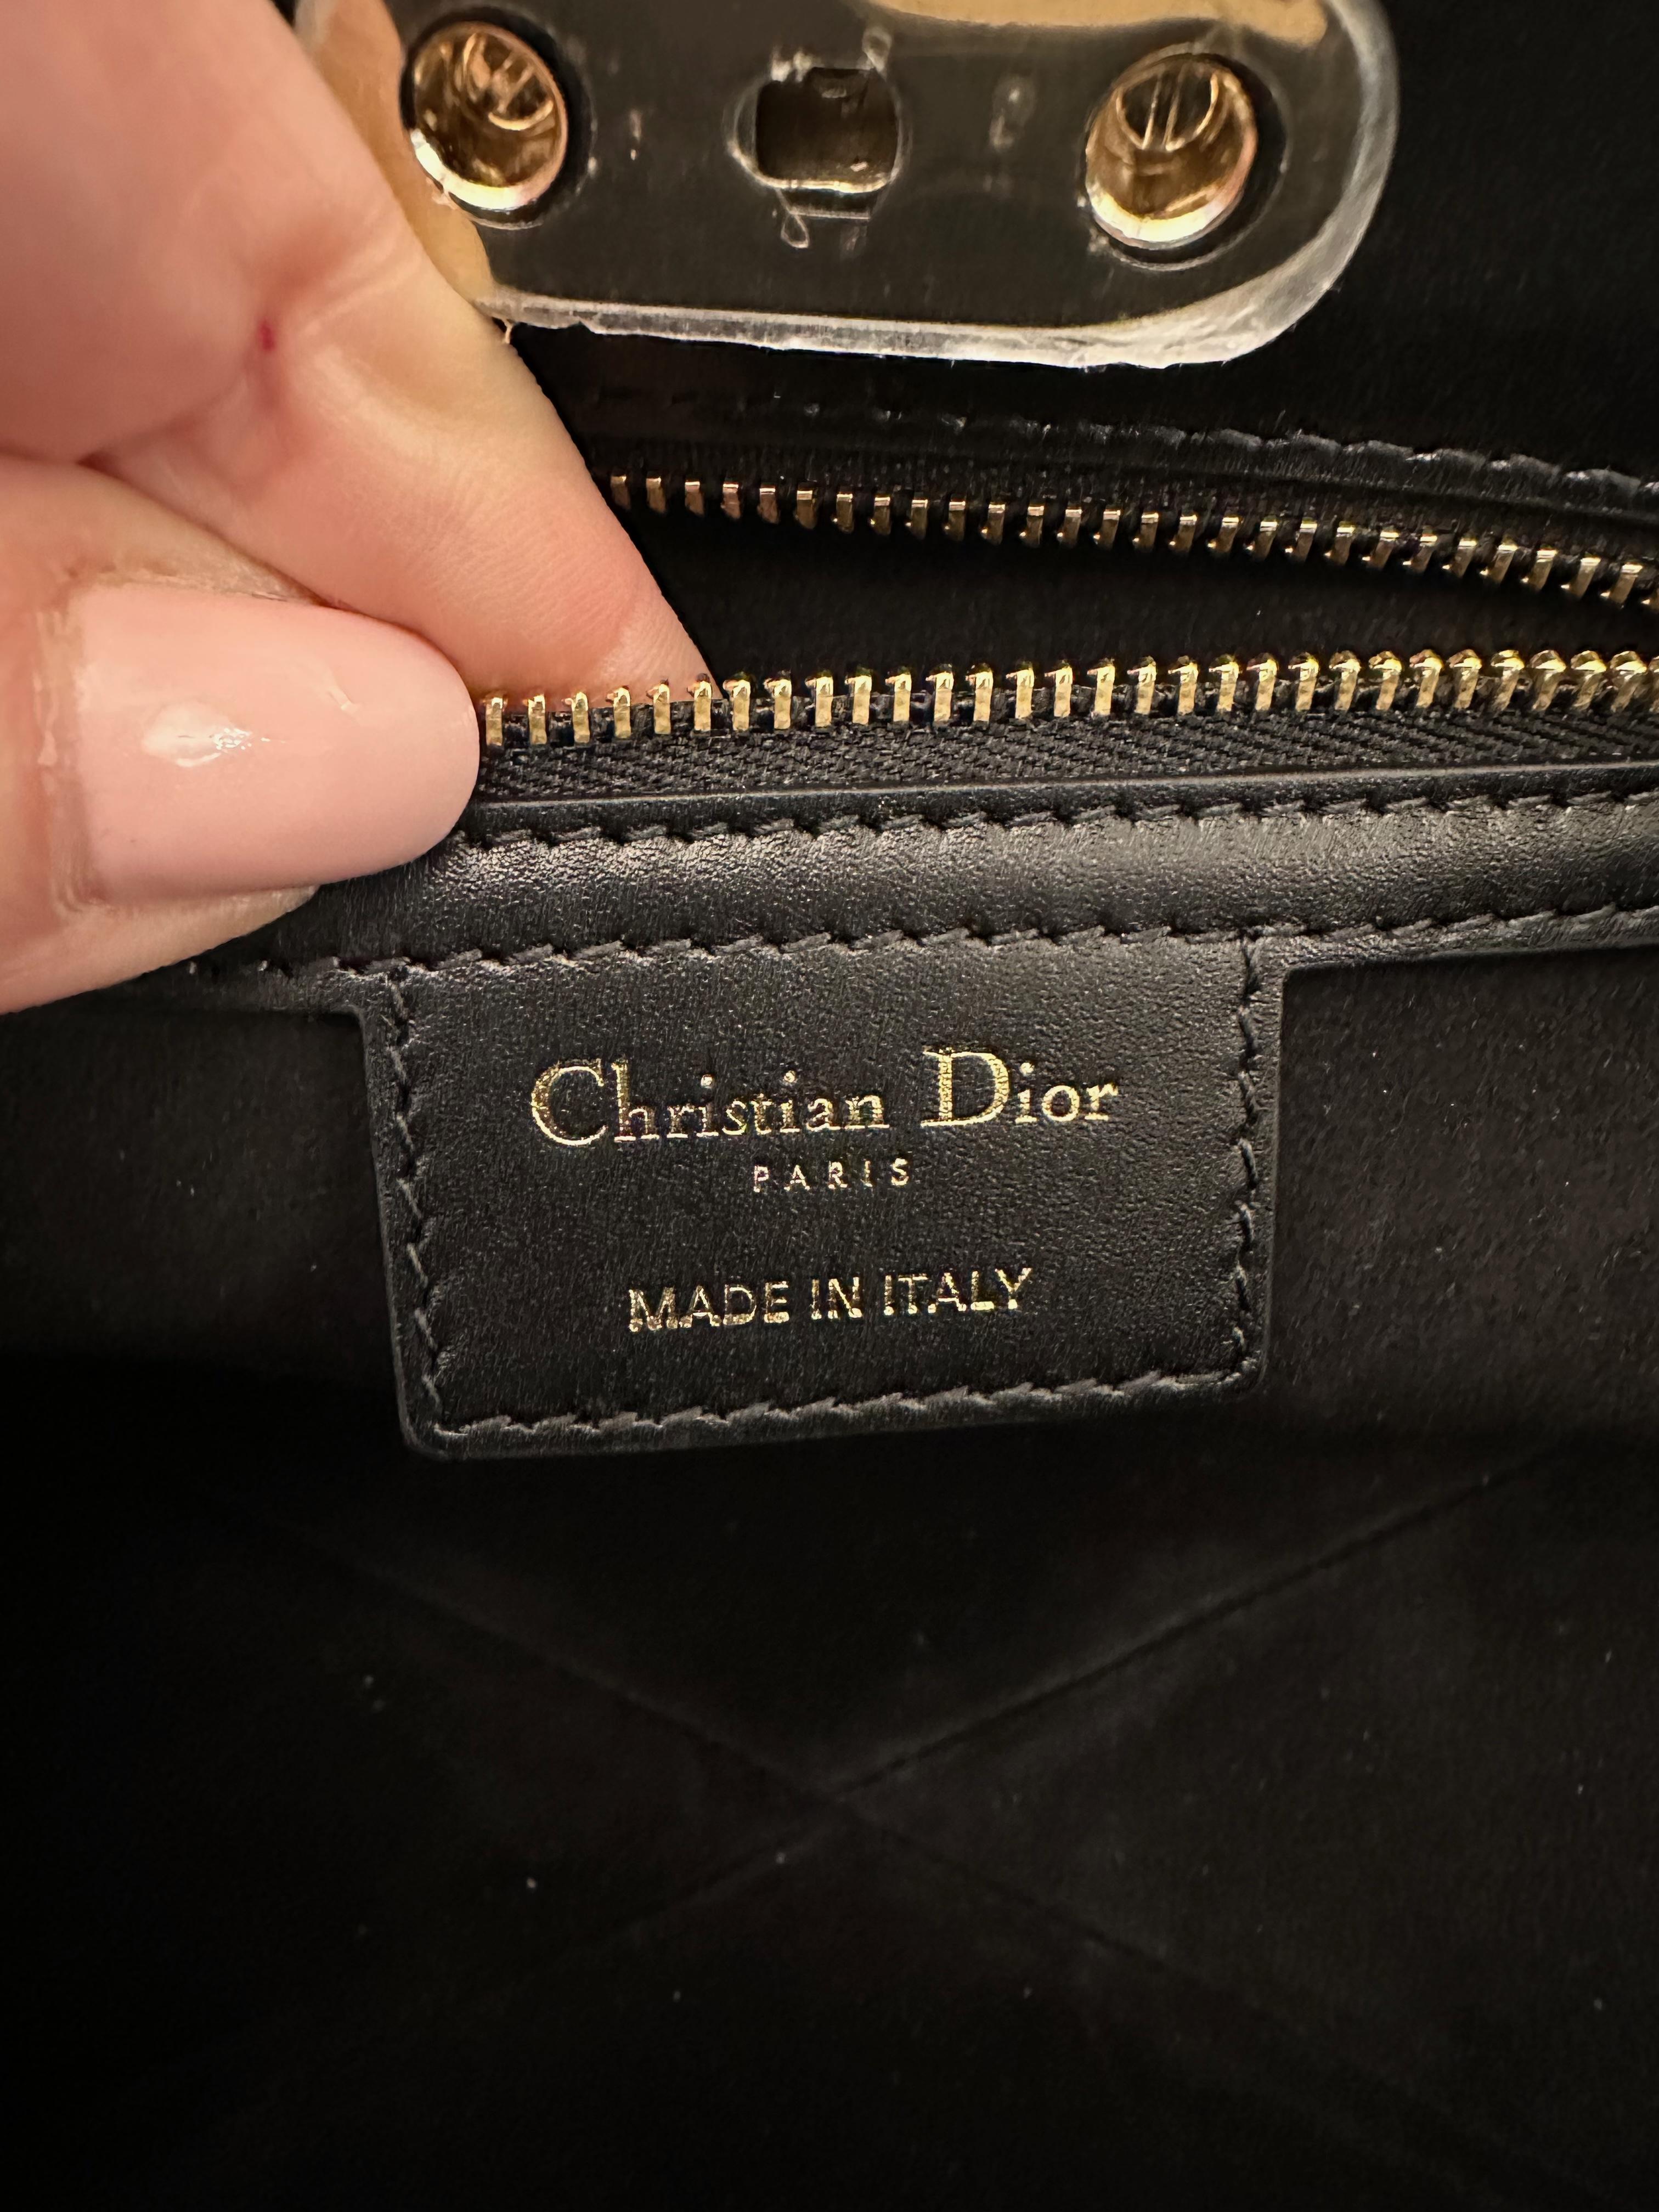 Inspiré des archives de la maison Christian Dior, ce sac Dior Key est réalisé dans un magnifique cuir de veau box noir.
Il est doté de deux poignées permettant un portage à la main ou à l'épaule. La fermeture doit rappeler une serrure à